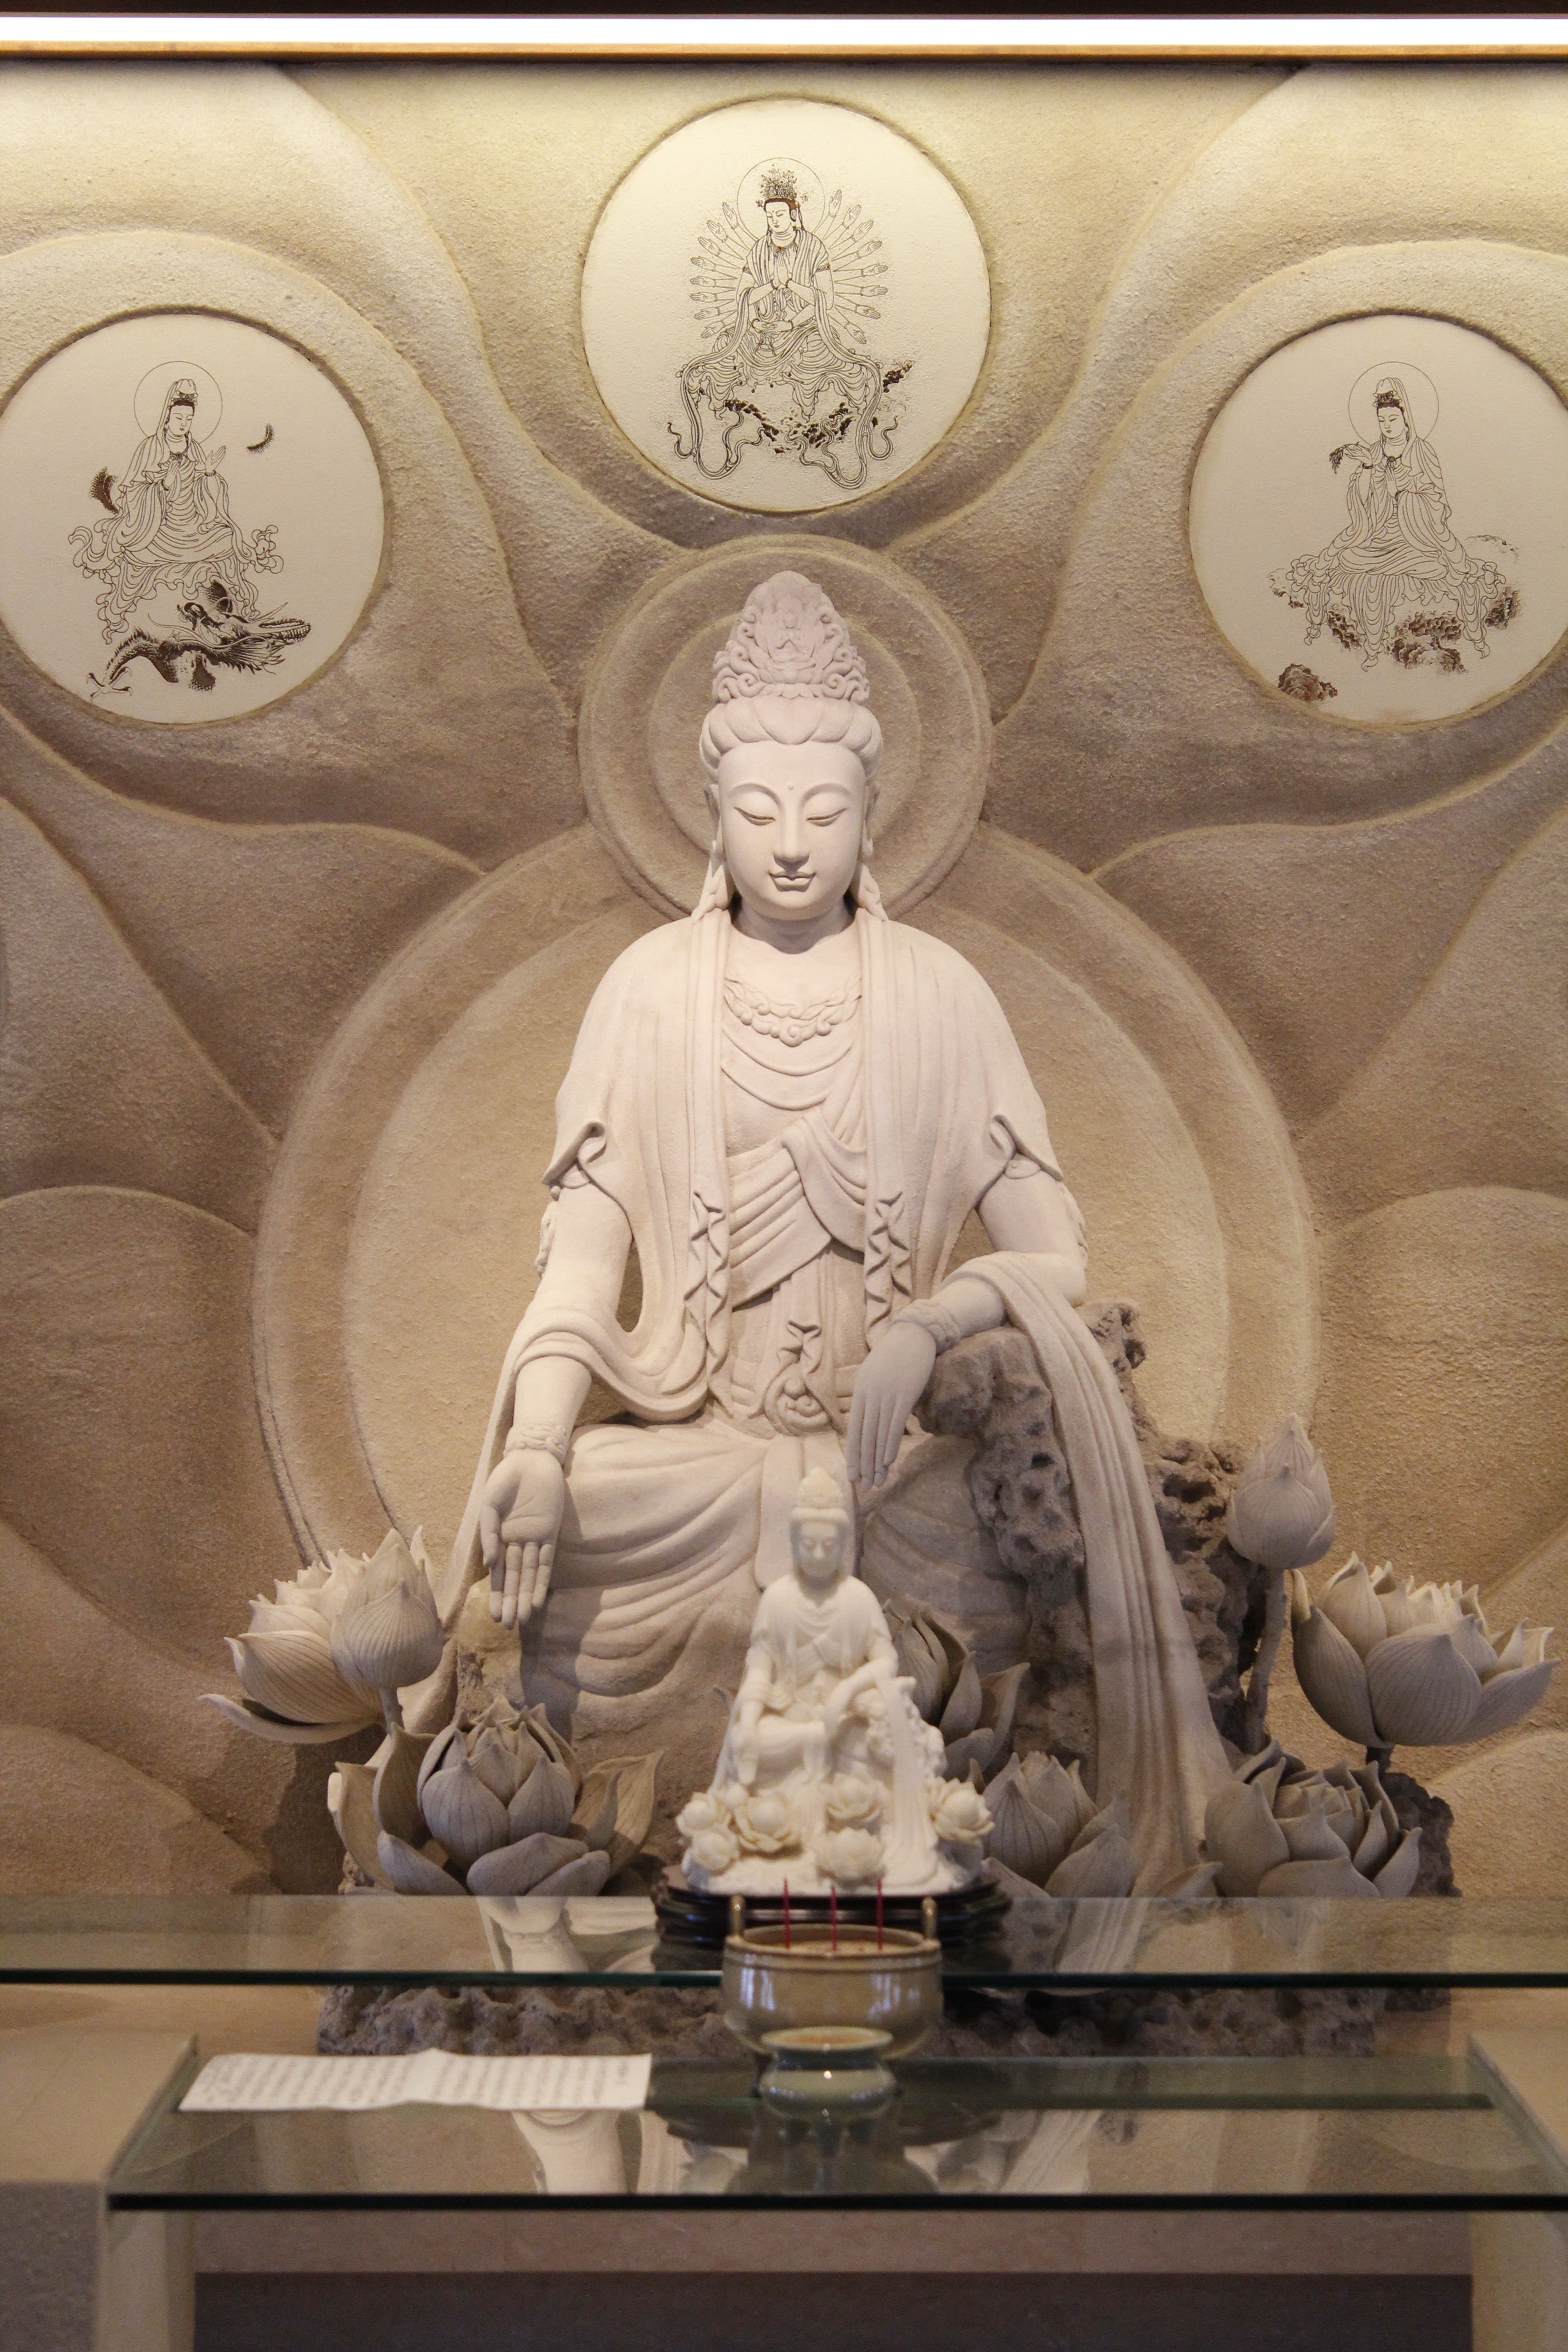 white buddha figurine